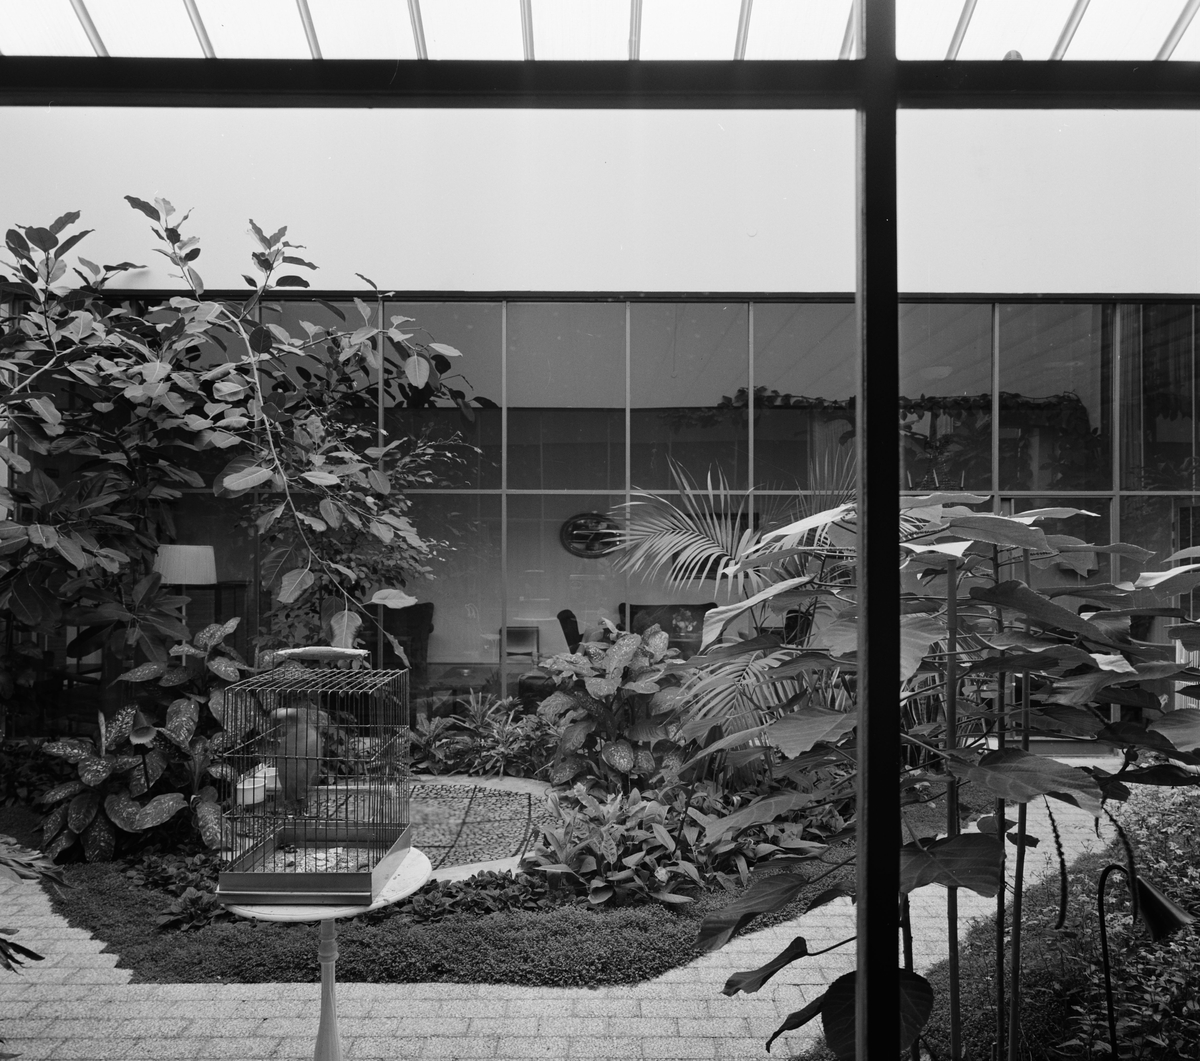 Vinterträdgård i Vällingehus
Fåglar i bur
Interiör